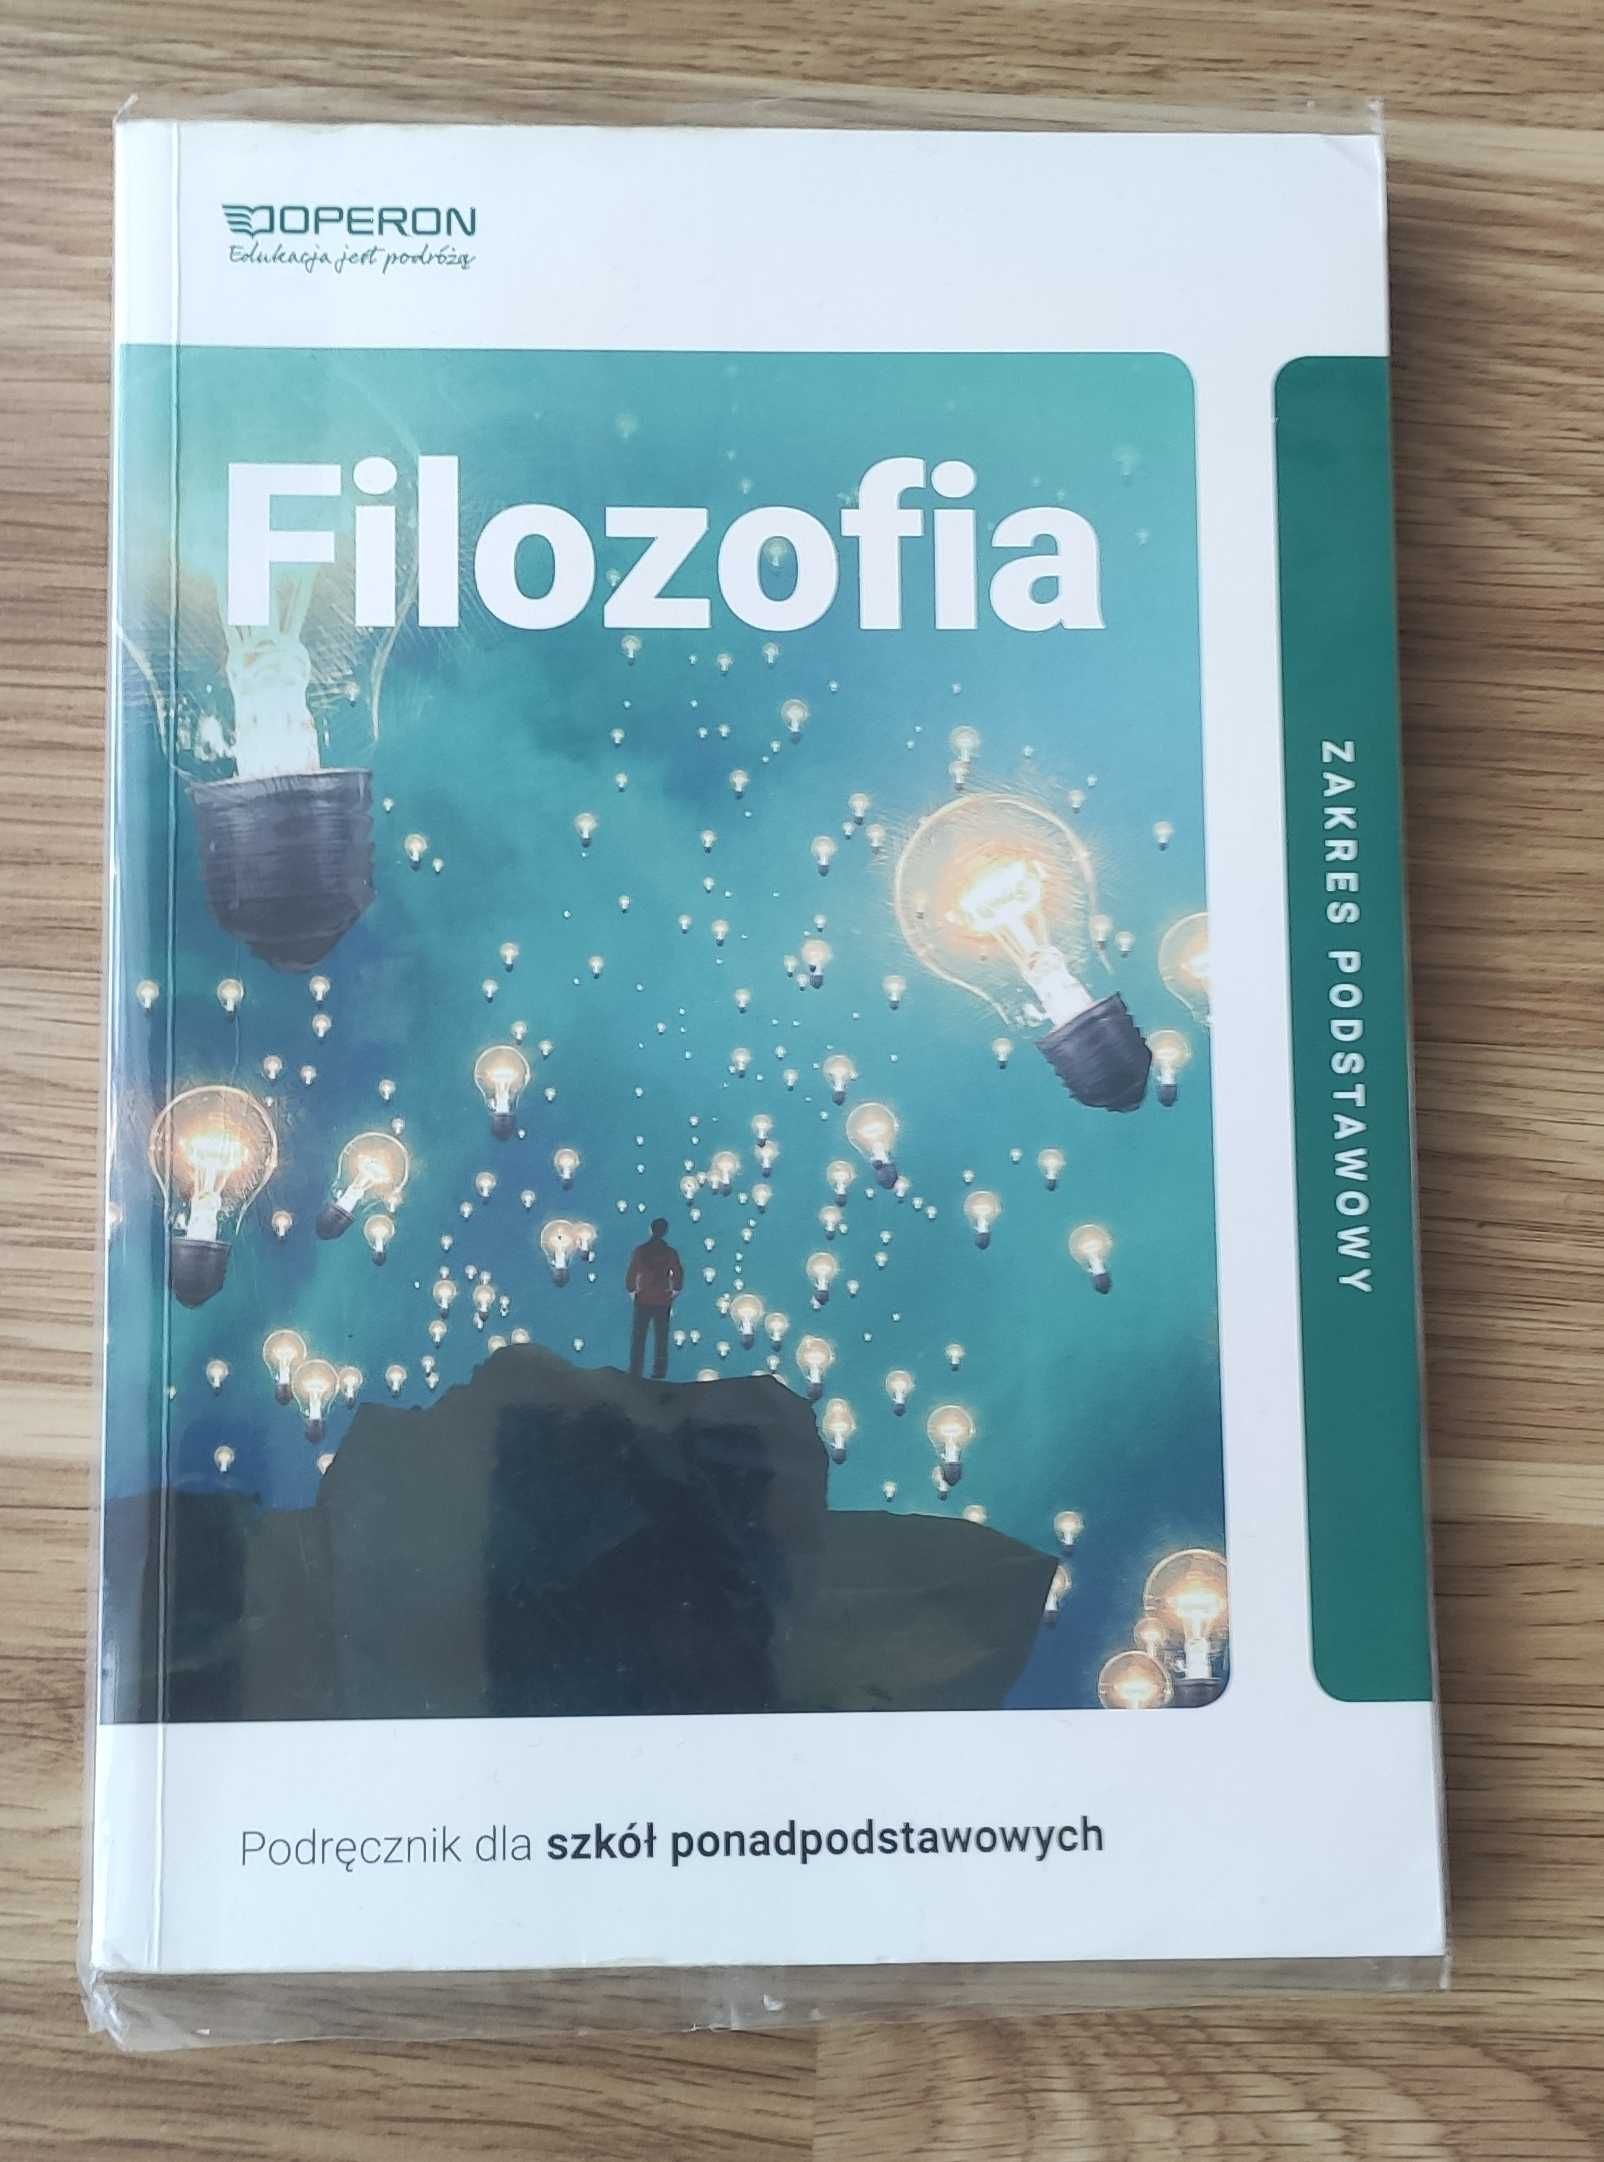 Podręcznik Filozofia wydawnictwo Operon.